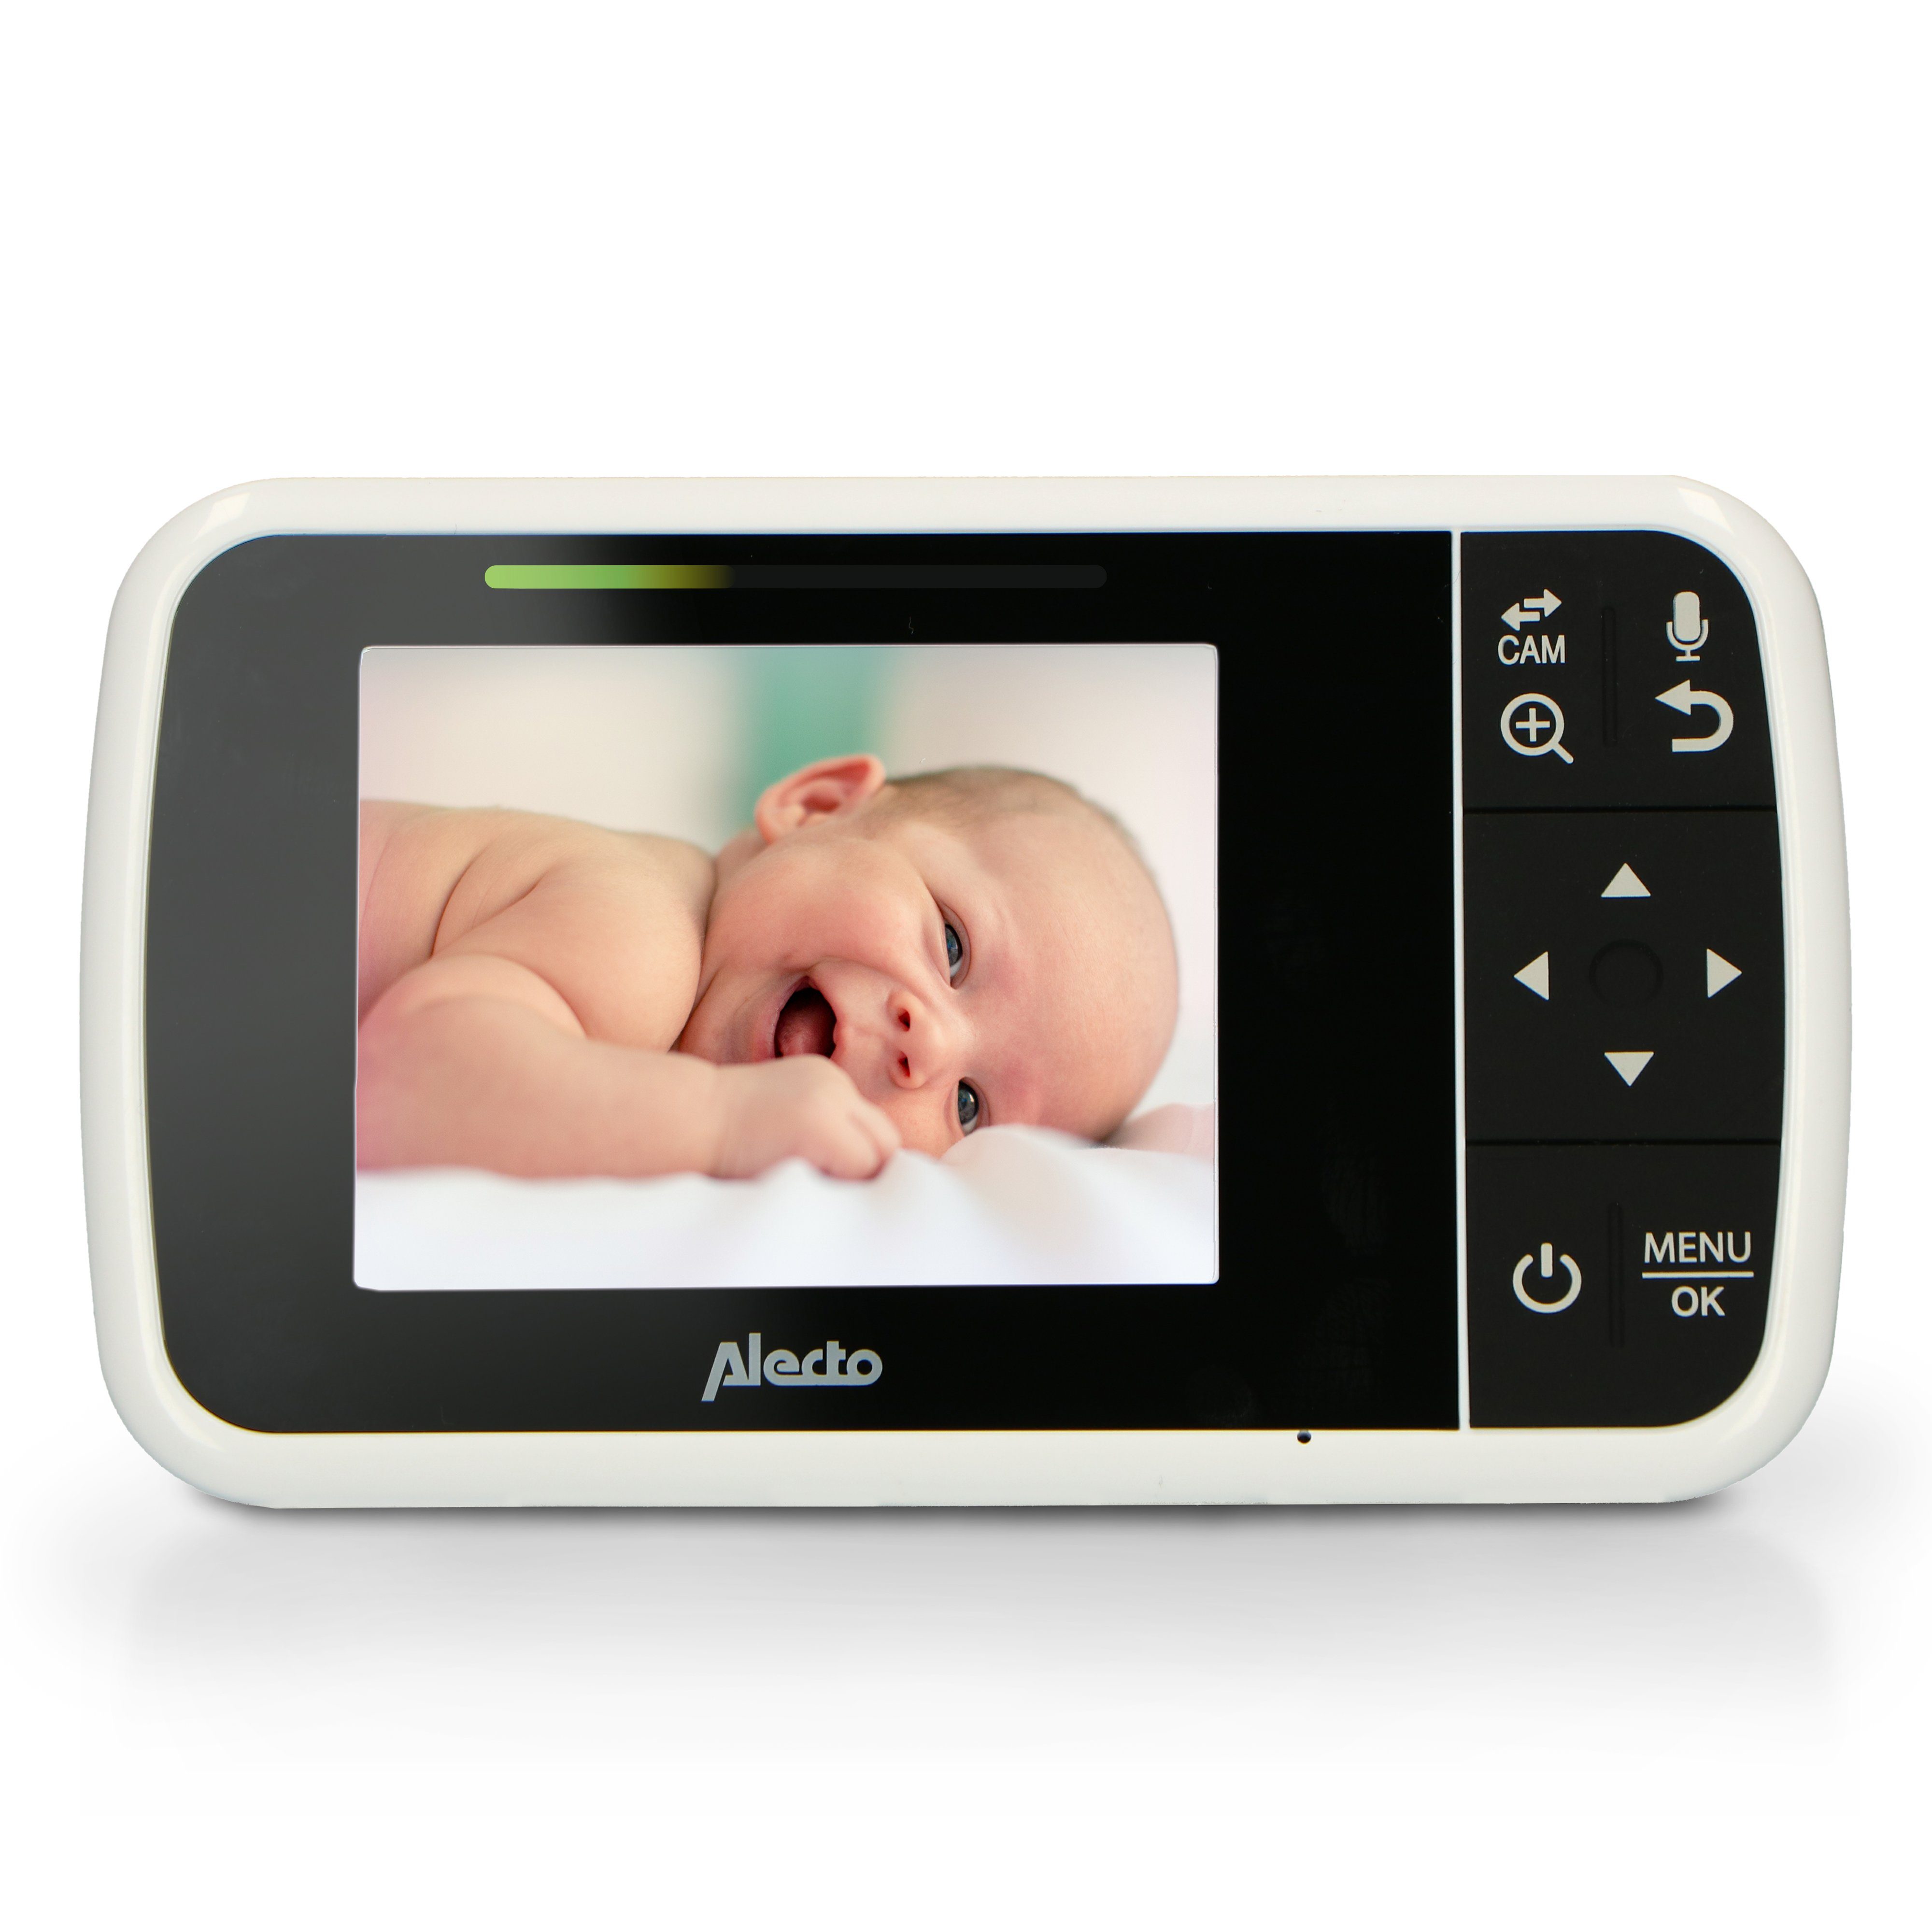 Baby Babyteil, auf und Kameras erweiterbar 4 VOX-Funktion, Video-Babyphone Energiespar-Modus Alecto DVM-135, Elternteil,